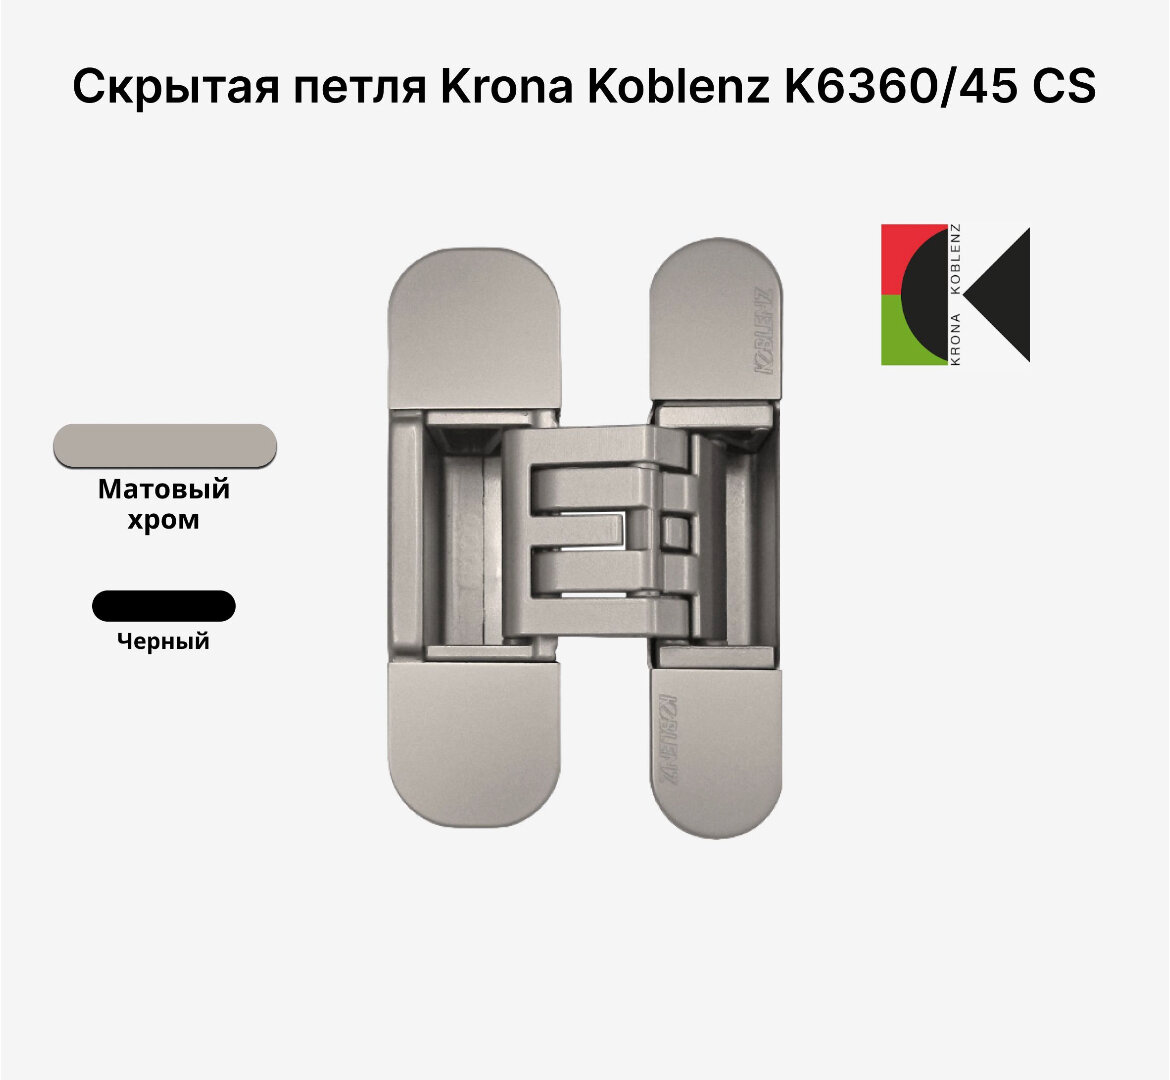 Комплект из двух скрытых петель KRONA KOBLENZ KUBICA Hybrid K6360/45 CS Матовый хром